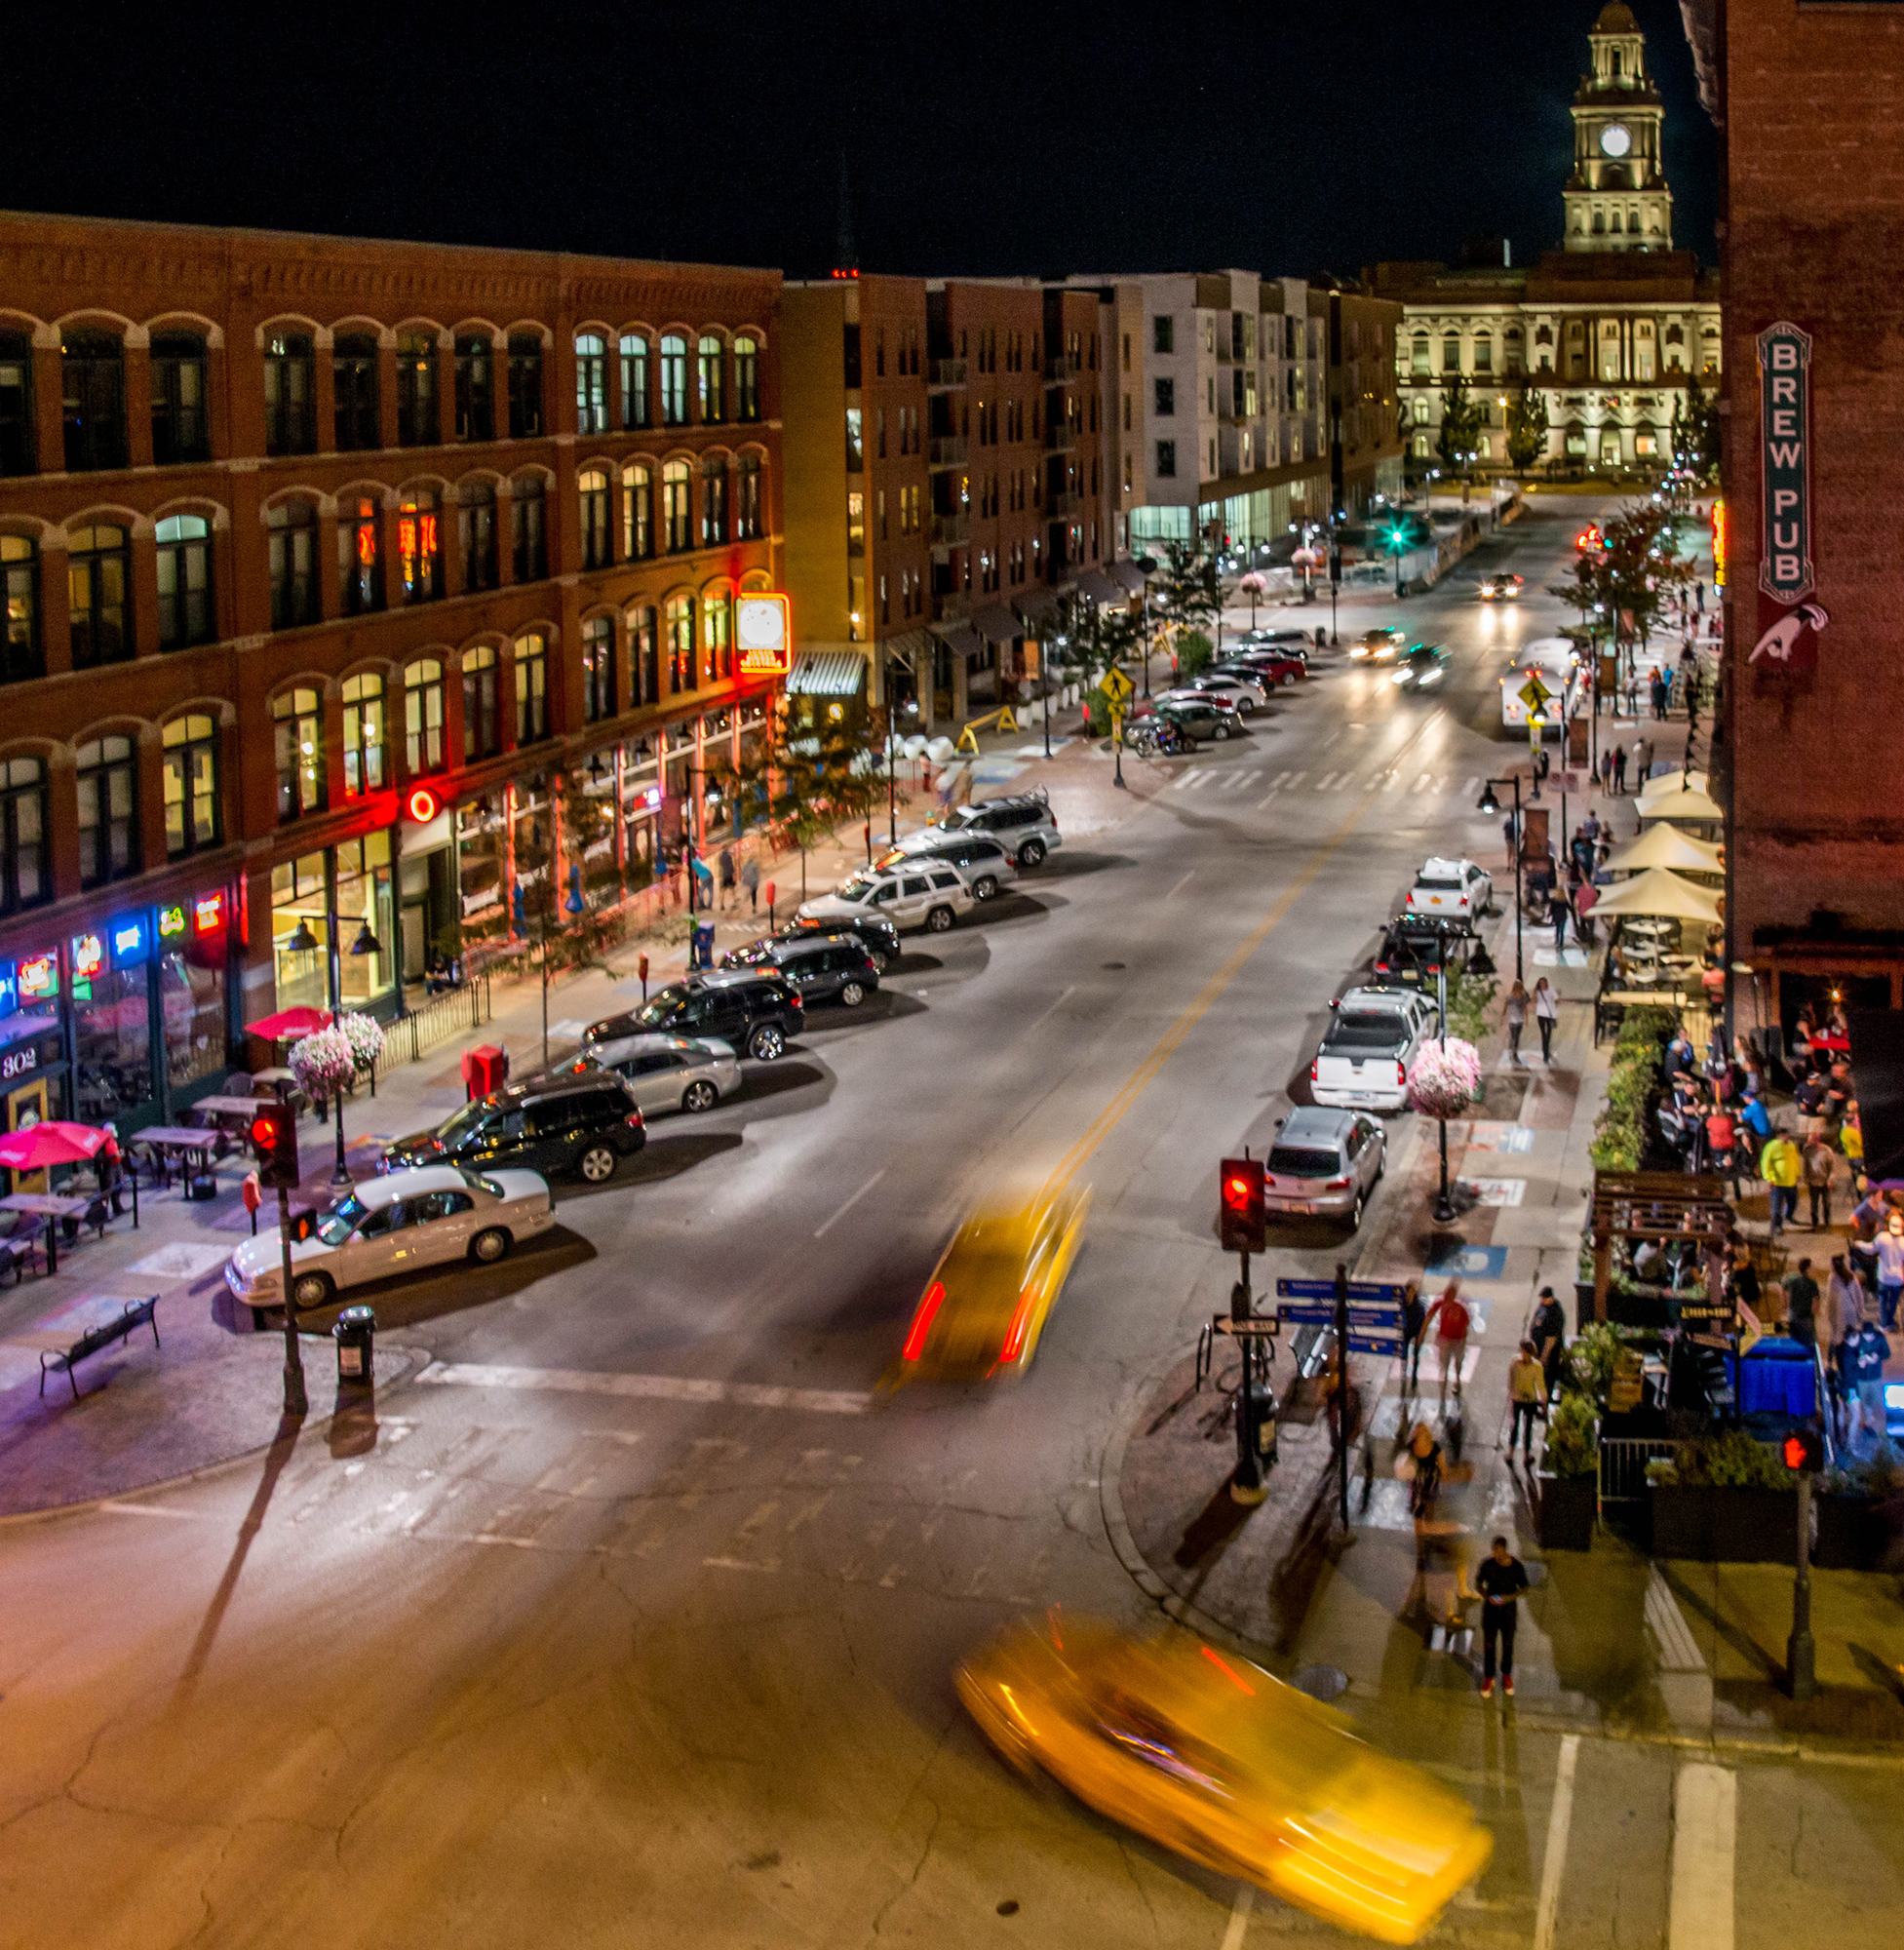 Downtown Des Moines’ Court Avenue.